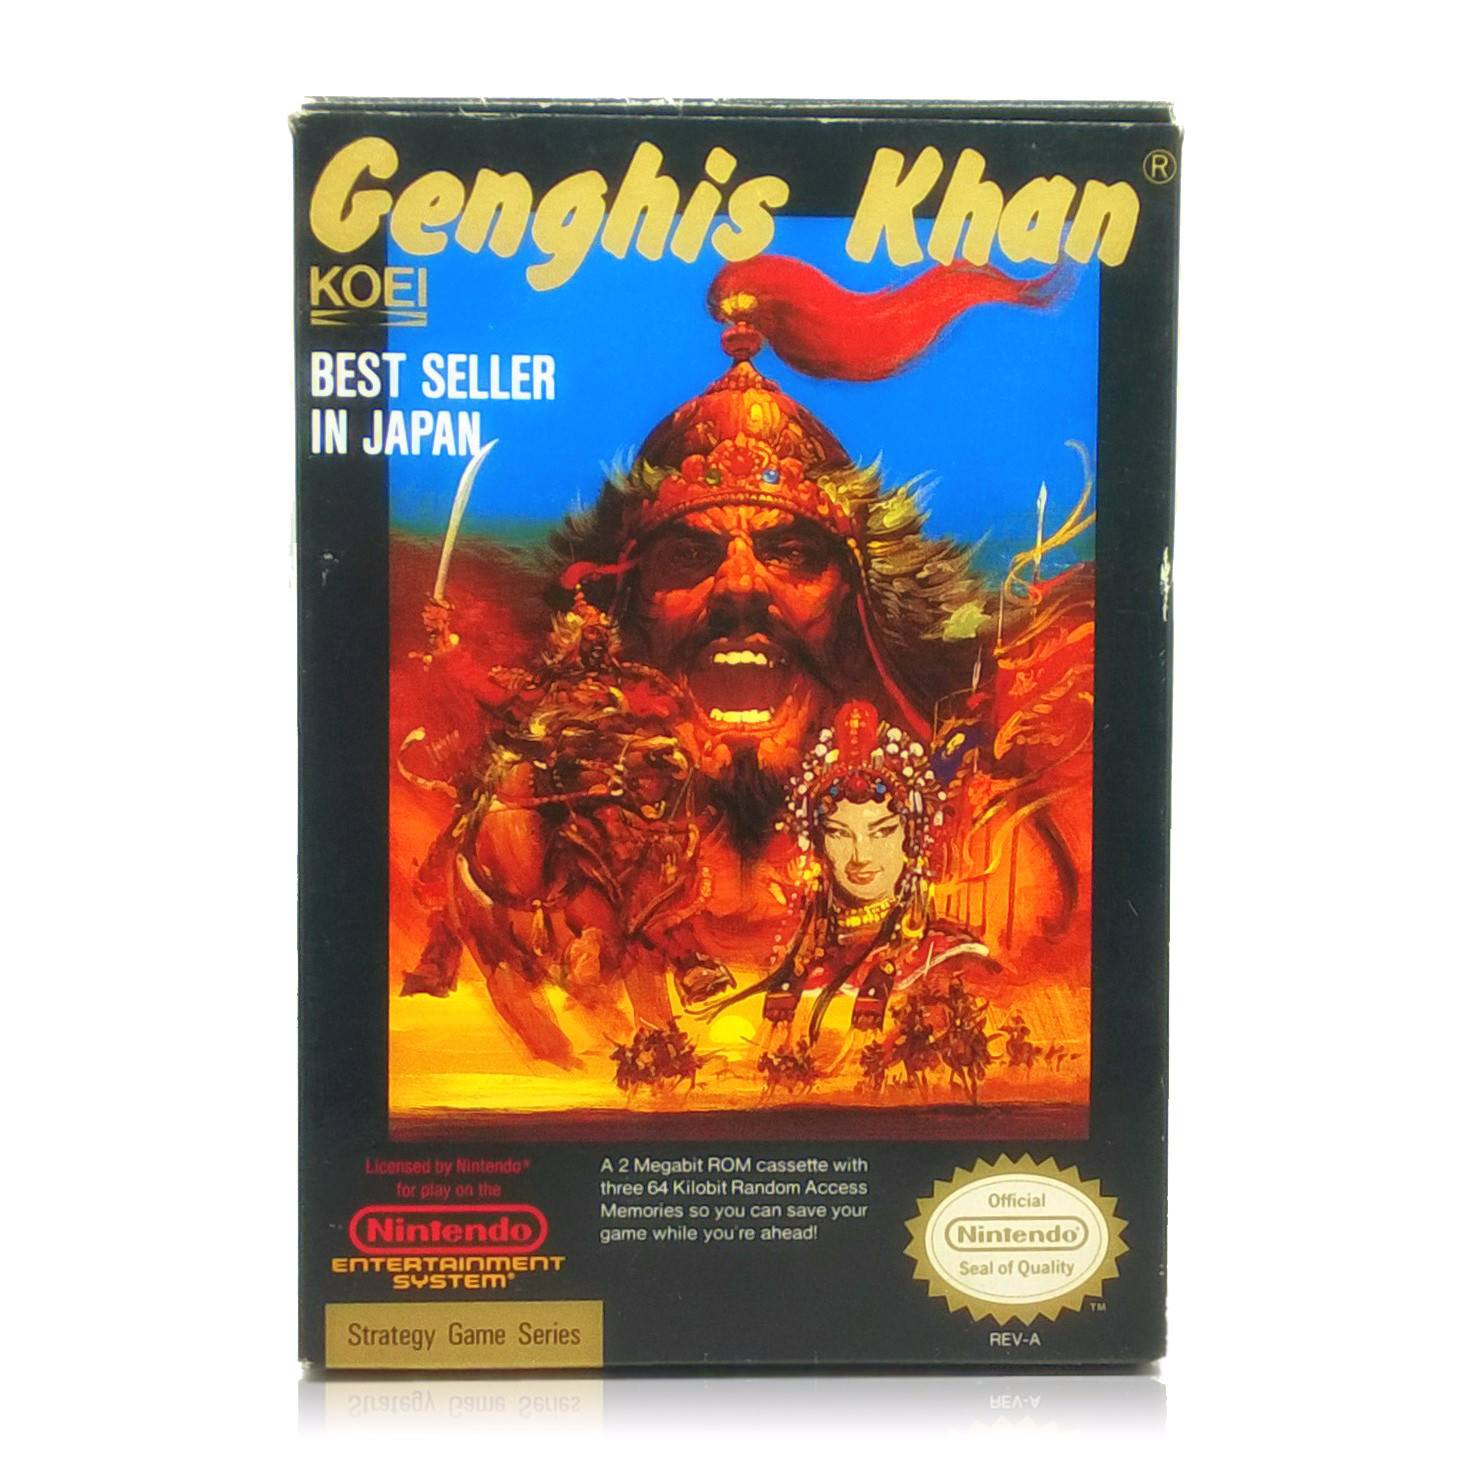 Genghis Khan NES Nintendo Game - Box